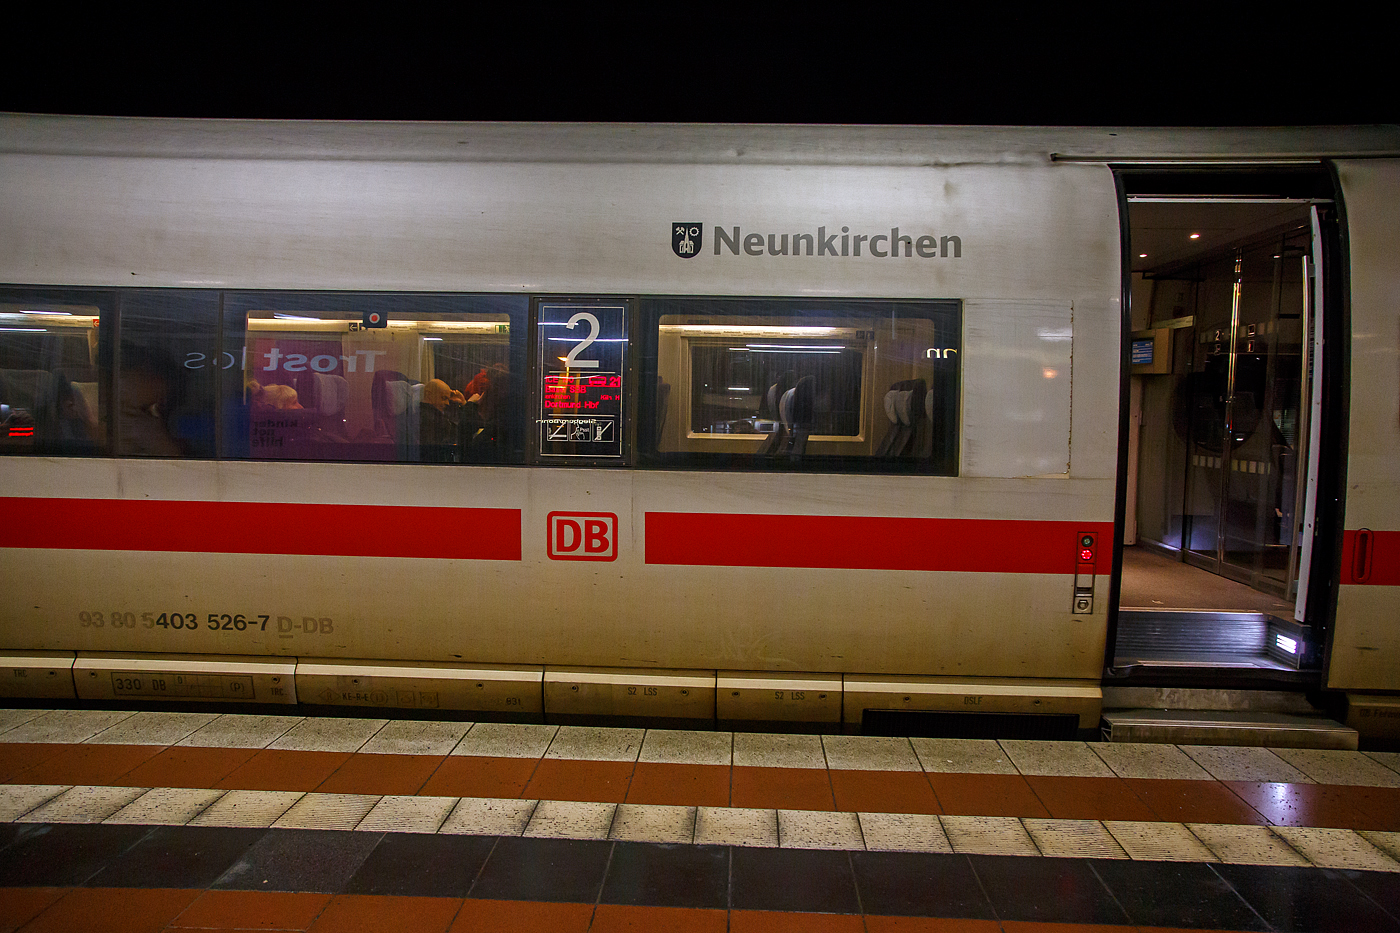 Detailbild vom ICE 3  Neunkirchen/Saar   Tz 326 (403 426-7 / 403026-8), er hat als ICE 100 (Basel SBB - Frankfurt(M) Flughafen Fernbf. – Köln Hbf - Dortmund Hbf), am 20 Februar 2017 pünktlich um 22:56 Uhr den Bahnhof Siegburg/Bonn erreicht.